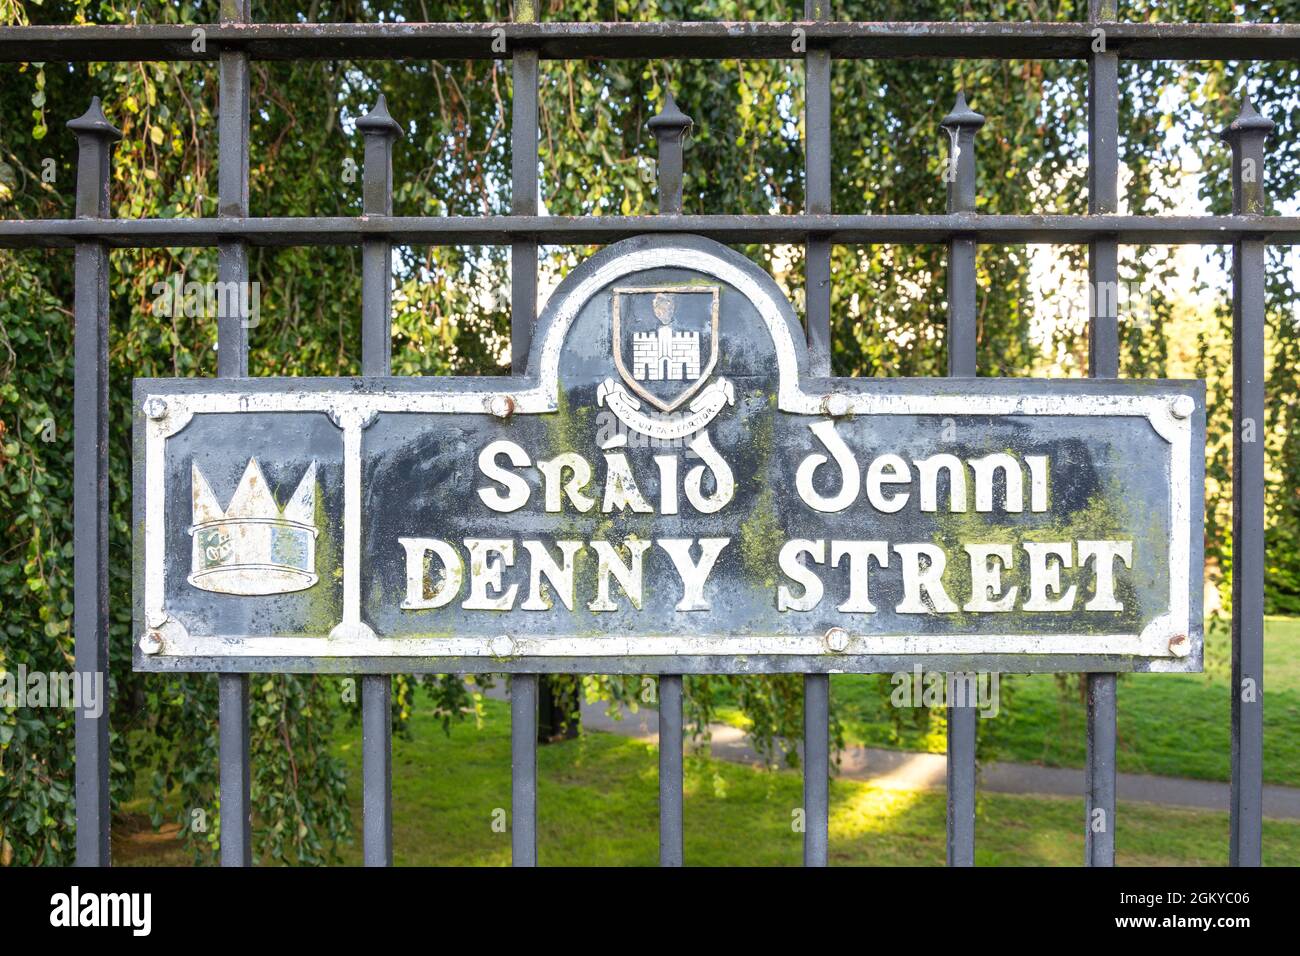 Señal de la calle, Denny Street, Tralee (Tra Li), County Kerry, República de Irlanda Foto de stock